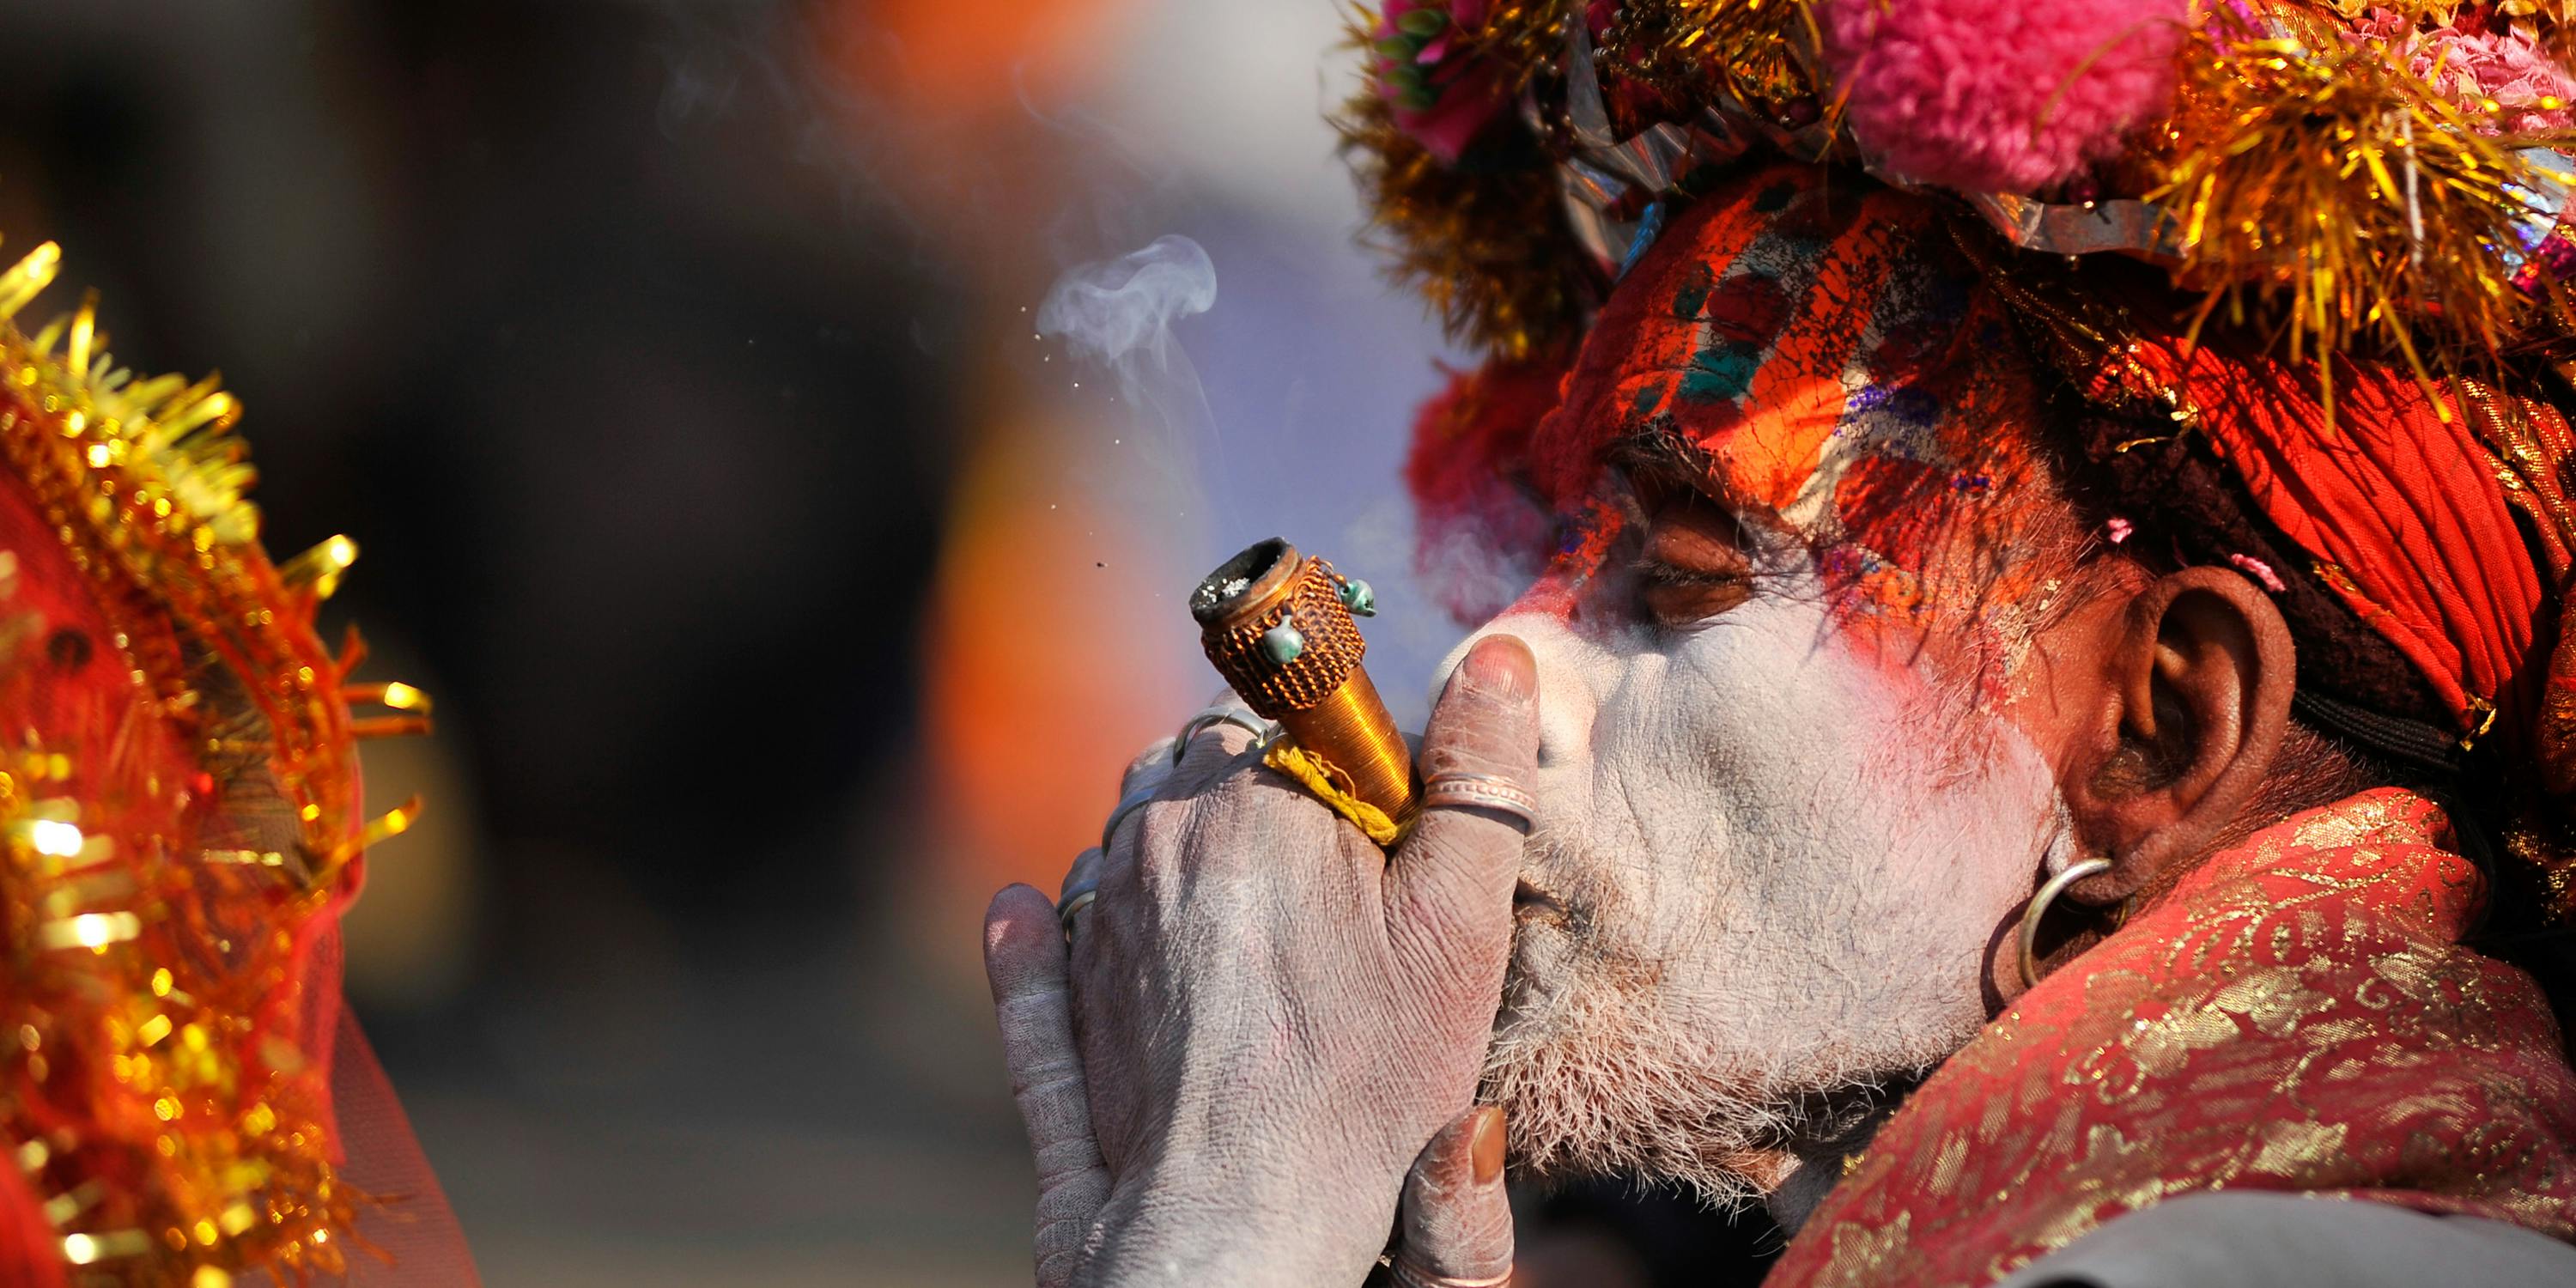 A colorful Hindu Sadhu or Holy Man smokes marijuana at the